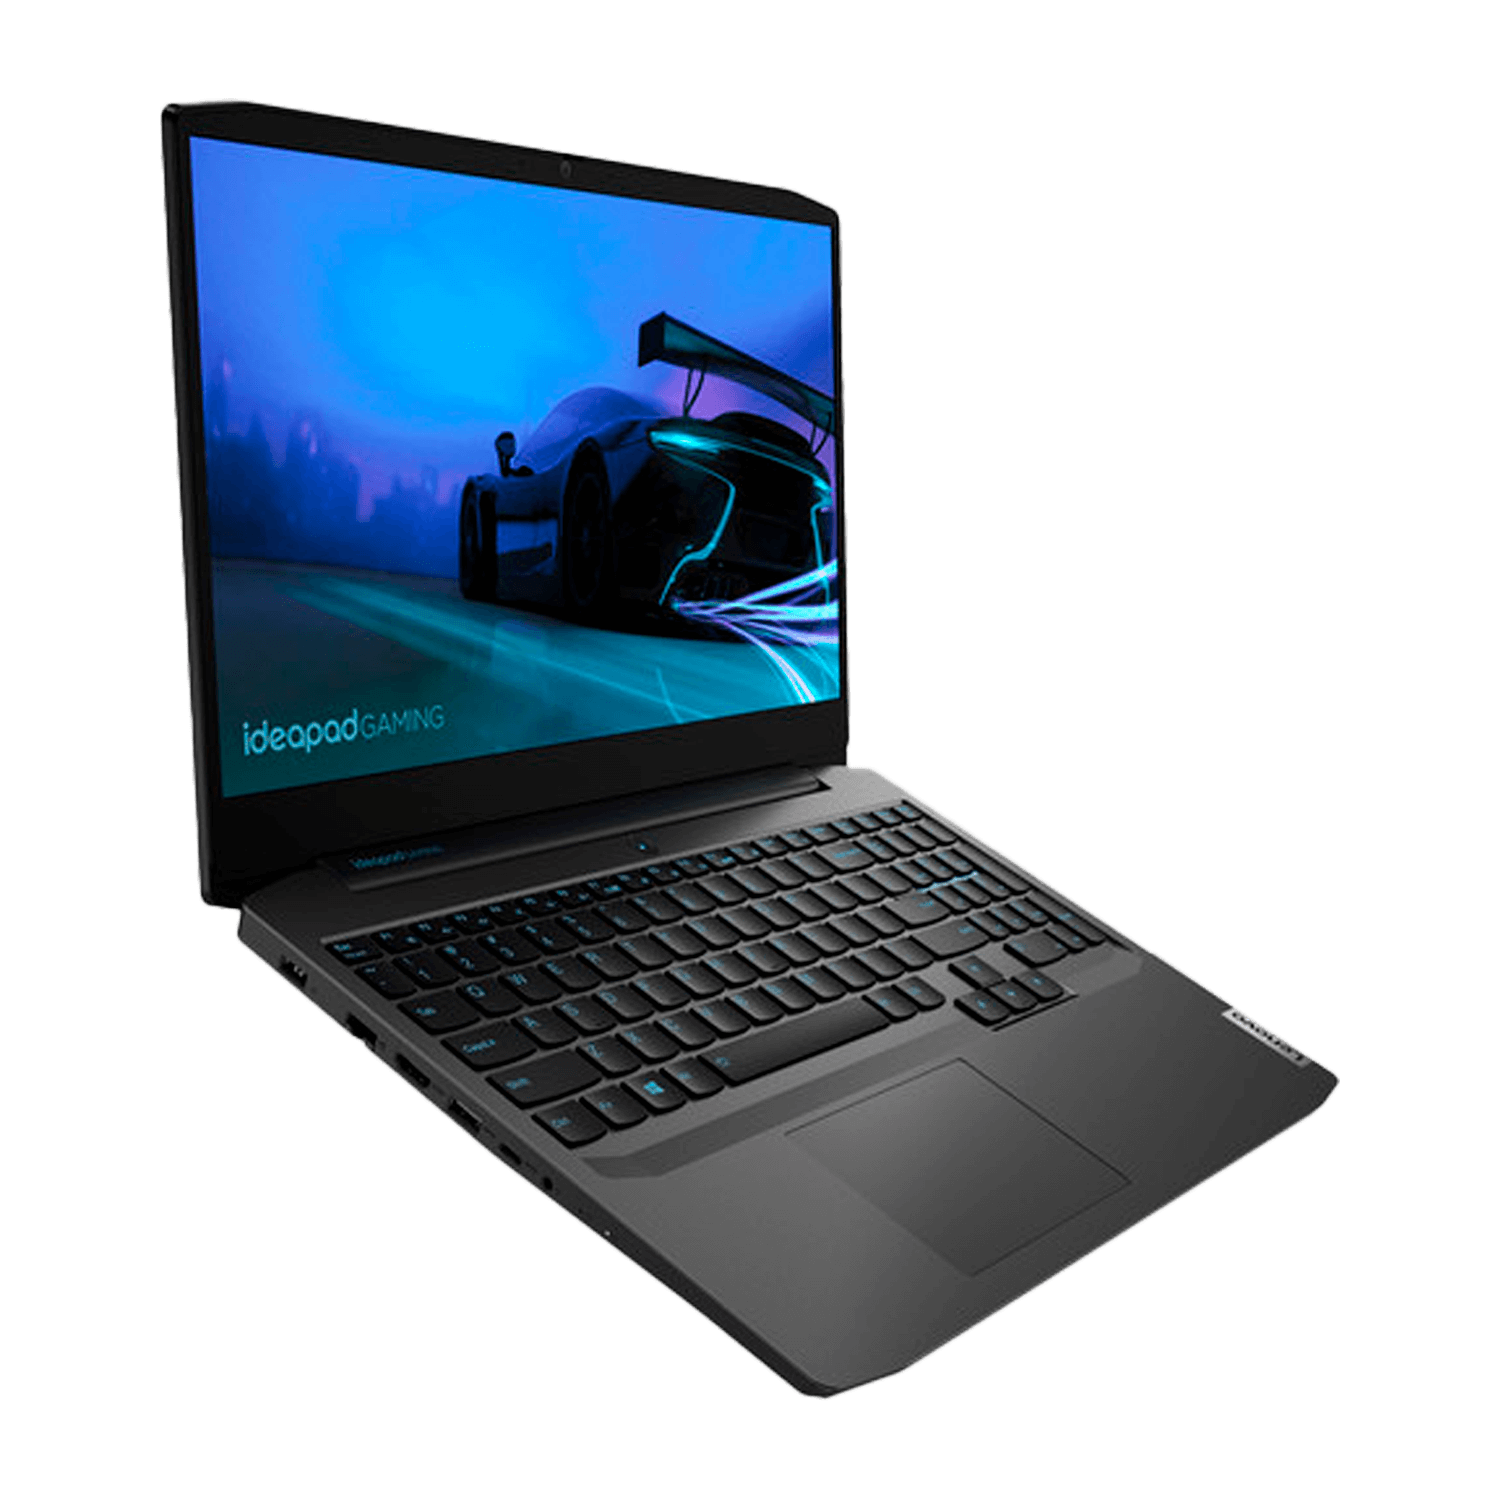 Notebook Lenovo IdeaPad Gaming 3i 81Y4001WUS i5-10300H / 256GB SSD + 1TB / Tela 15.6" / GTX 1650 4GB - Windows 10